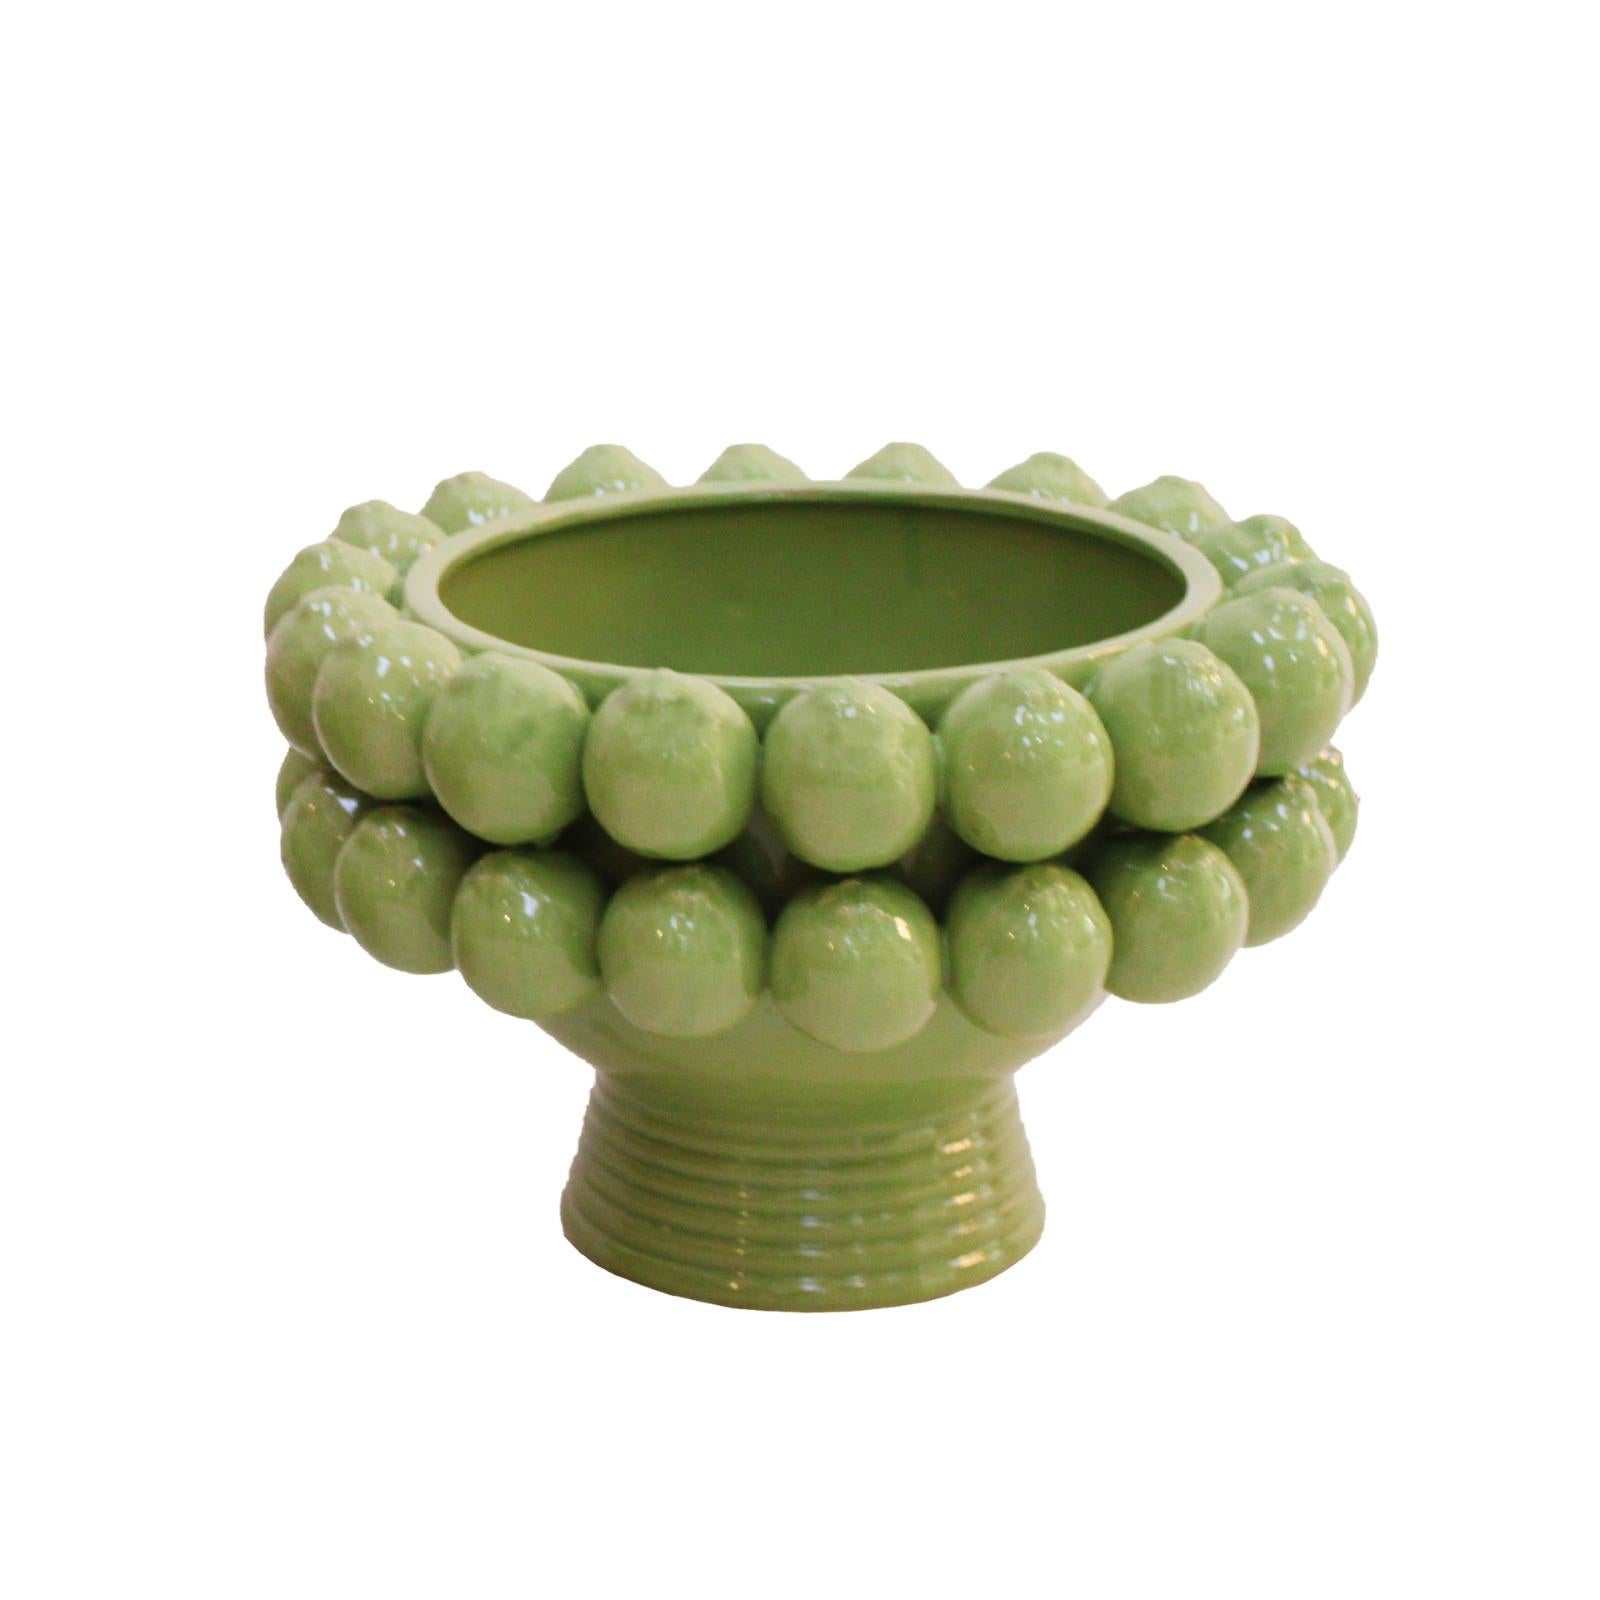 Vase fabriqué à la main en céramique émaillée avec des motifs traditionnels du sud de l'Italie.